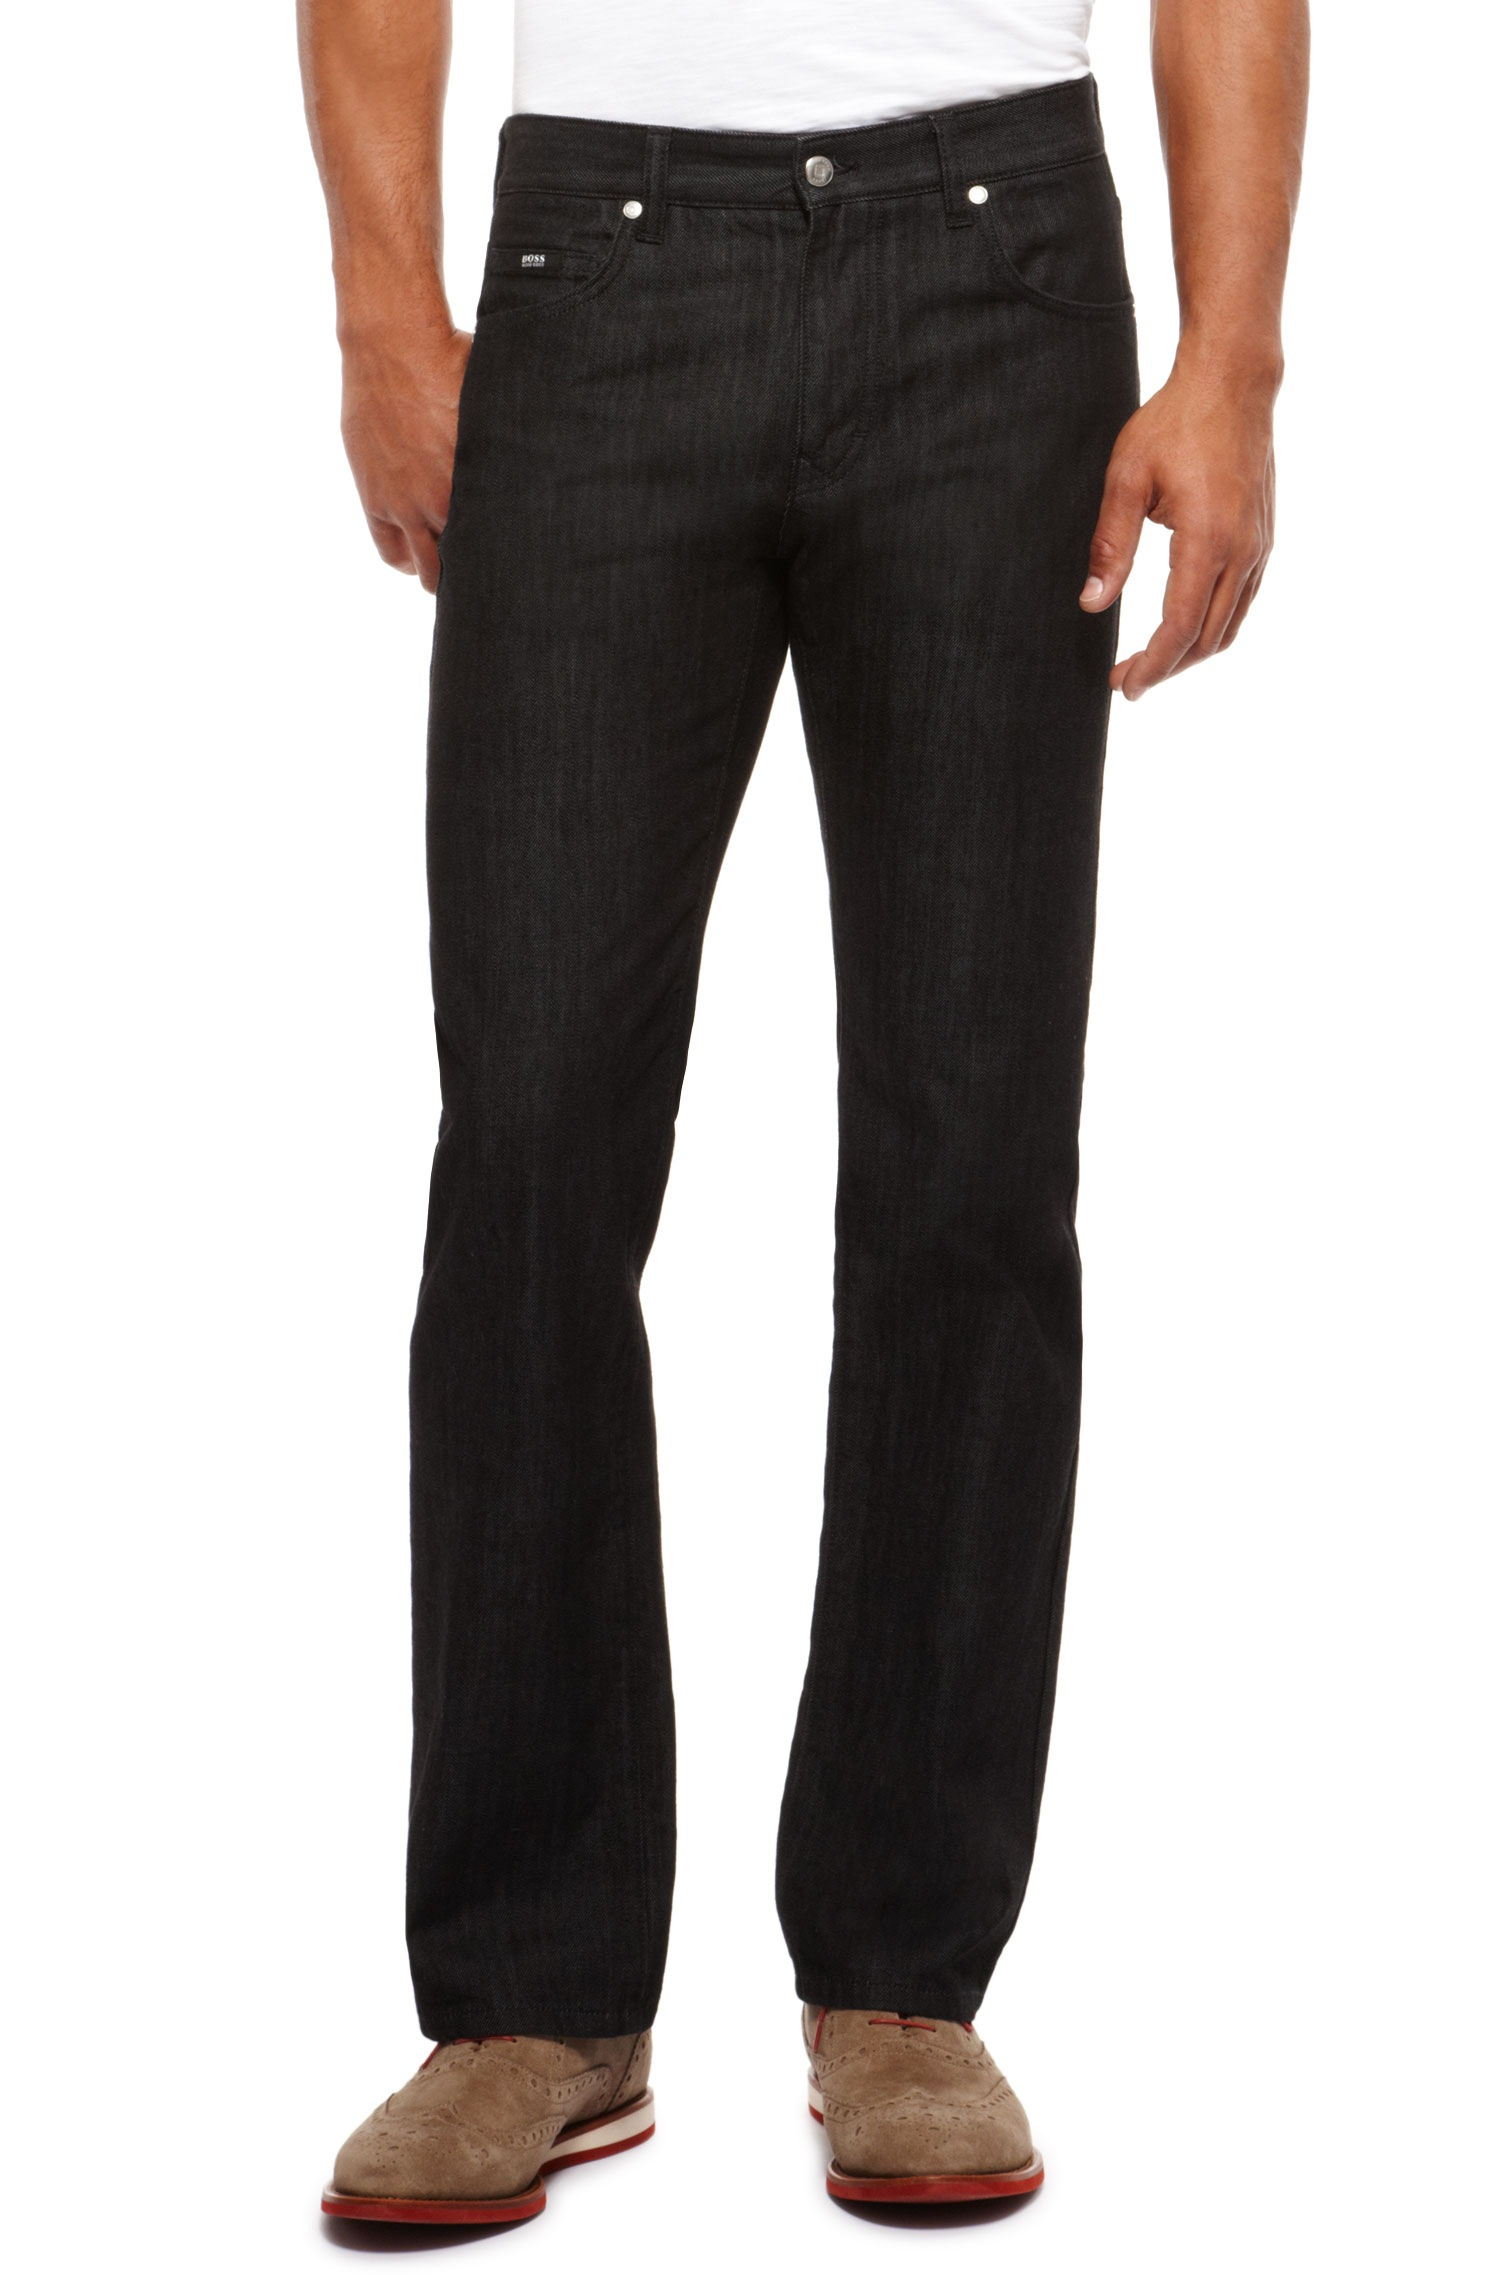 BOSS by HUGO BOSS Denim Kansas Jeans in Black for Men - Lyst